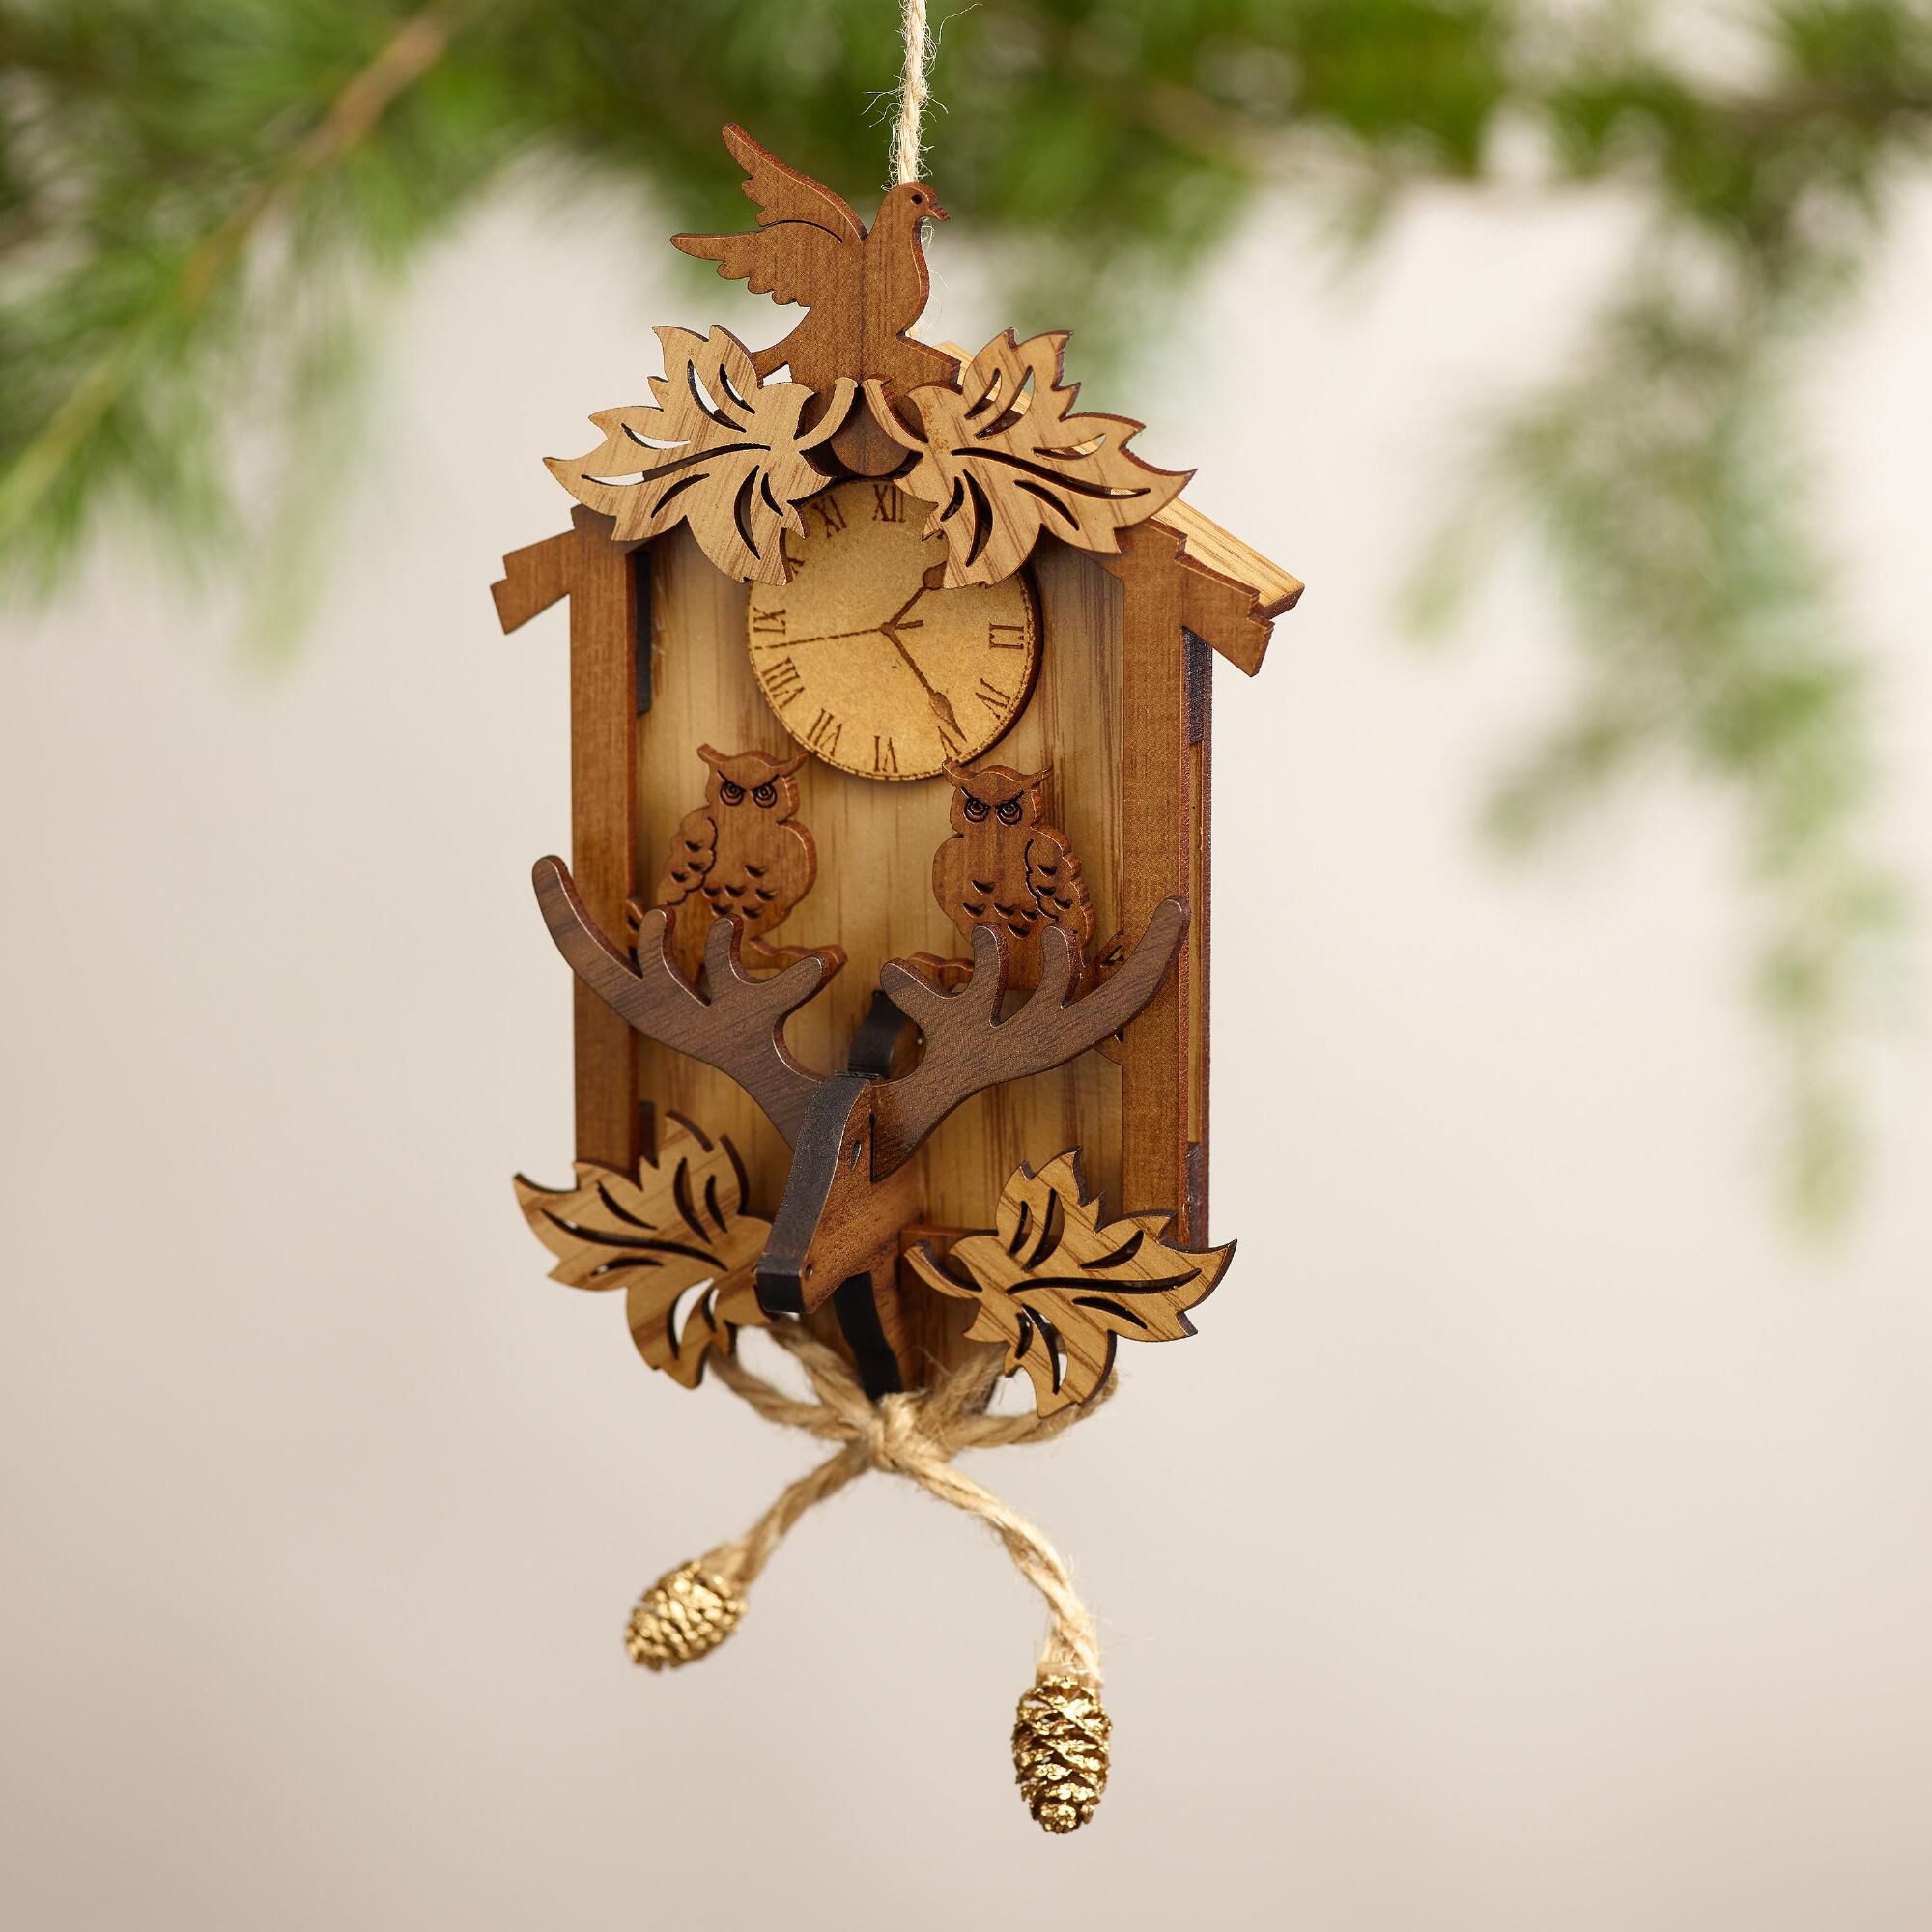 Wood Cuckoo Clock Ornaments, Set of 2 | Cuckoo clocks, Ornament and ...